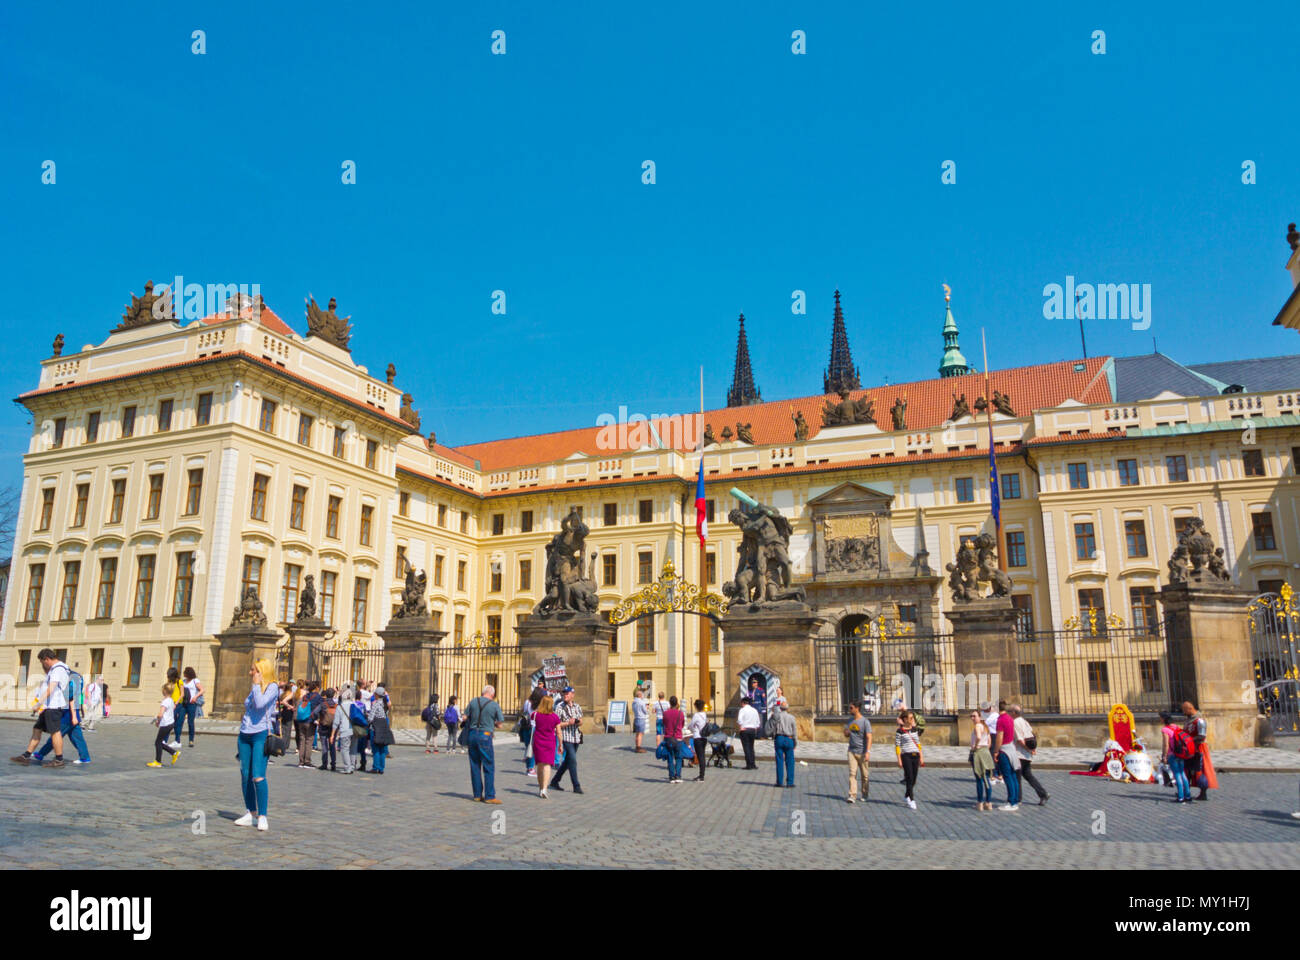 Castle gates, Hradcanske namesti, Hradcany, Prague, Czech Republic Stock Photo